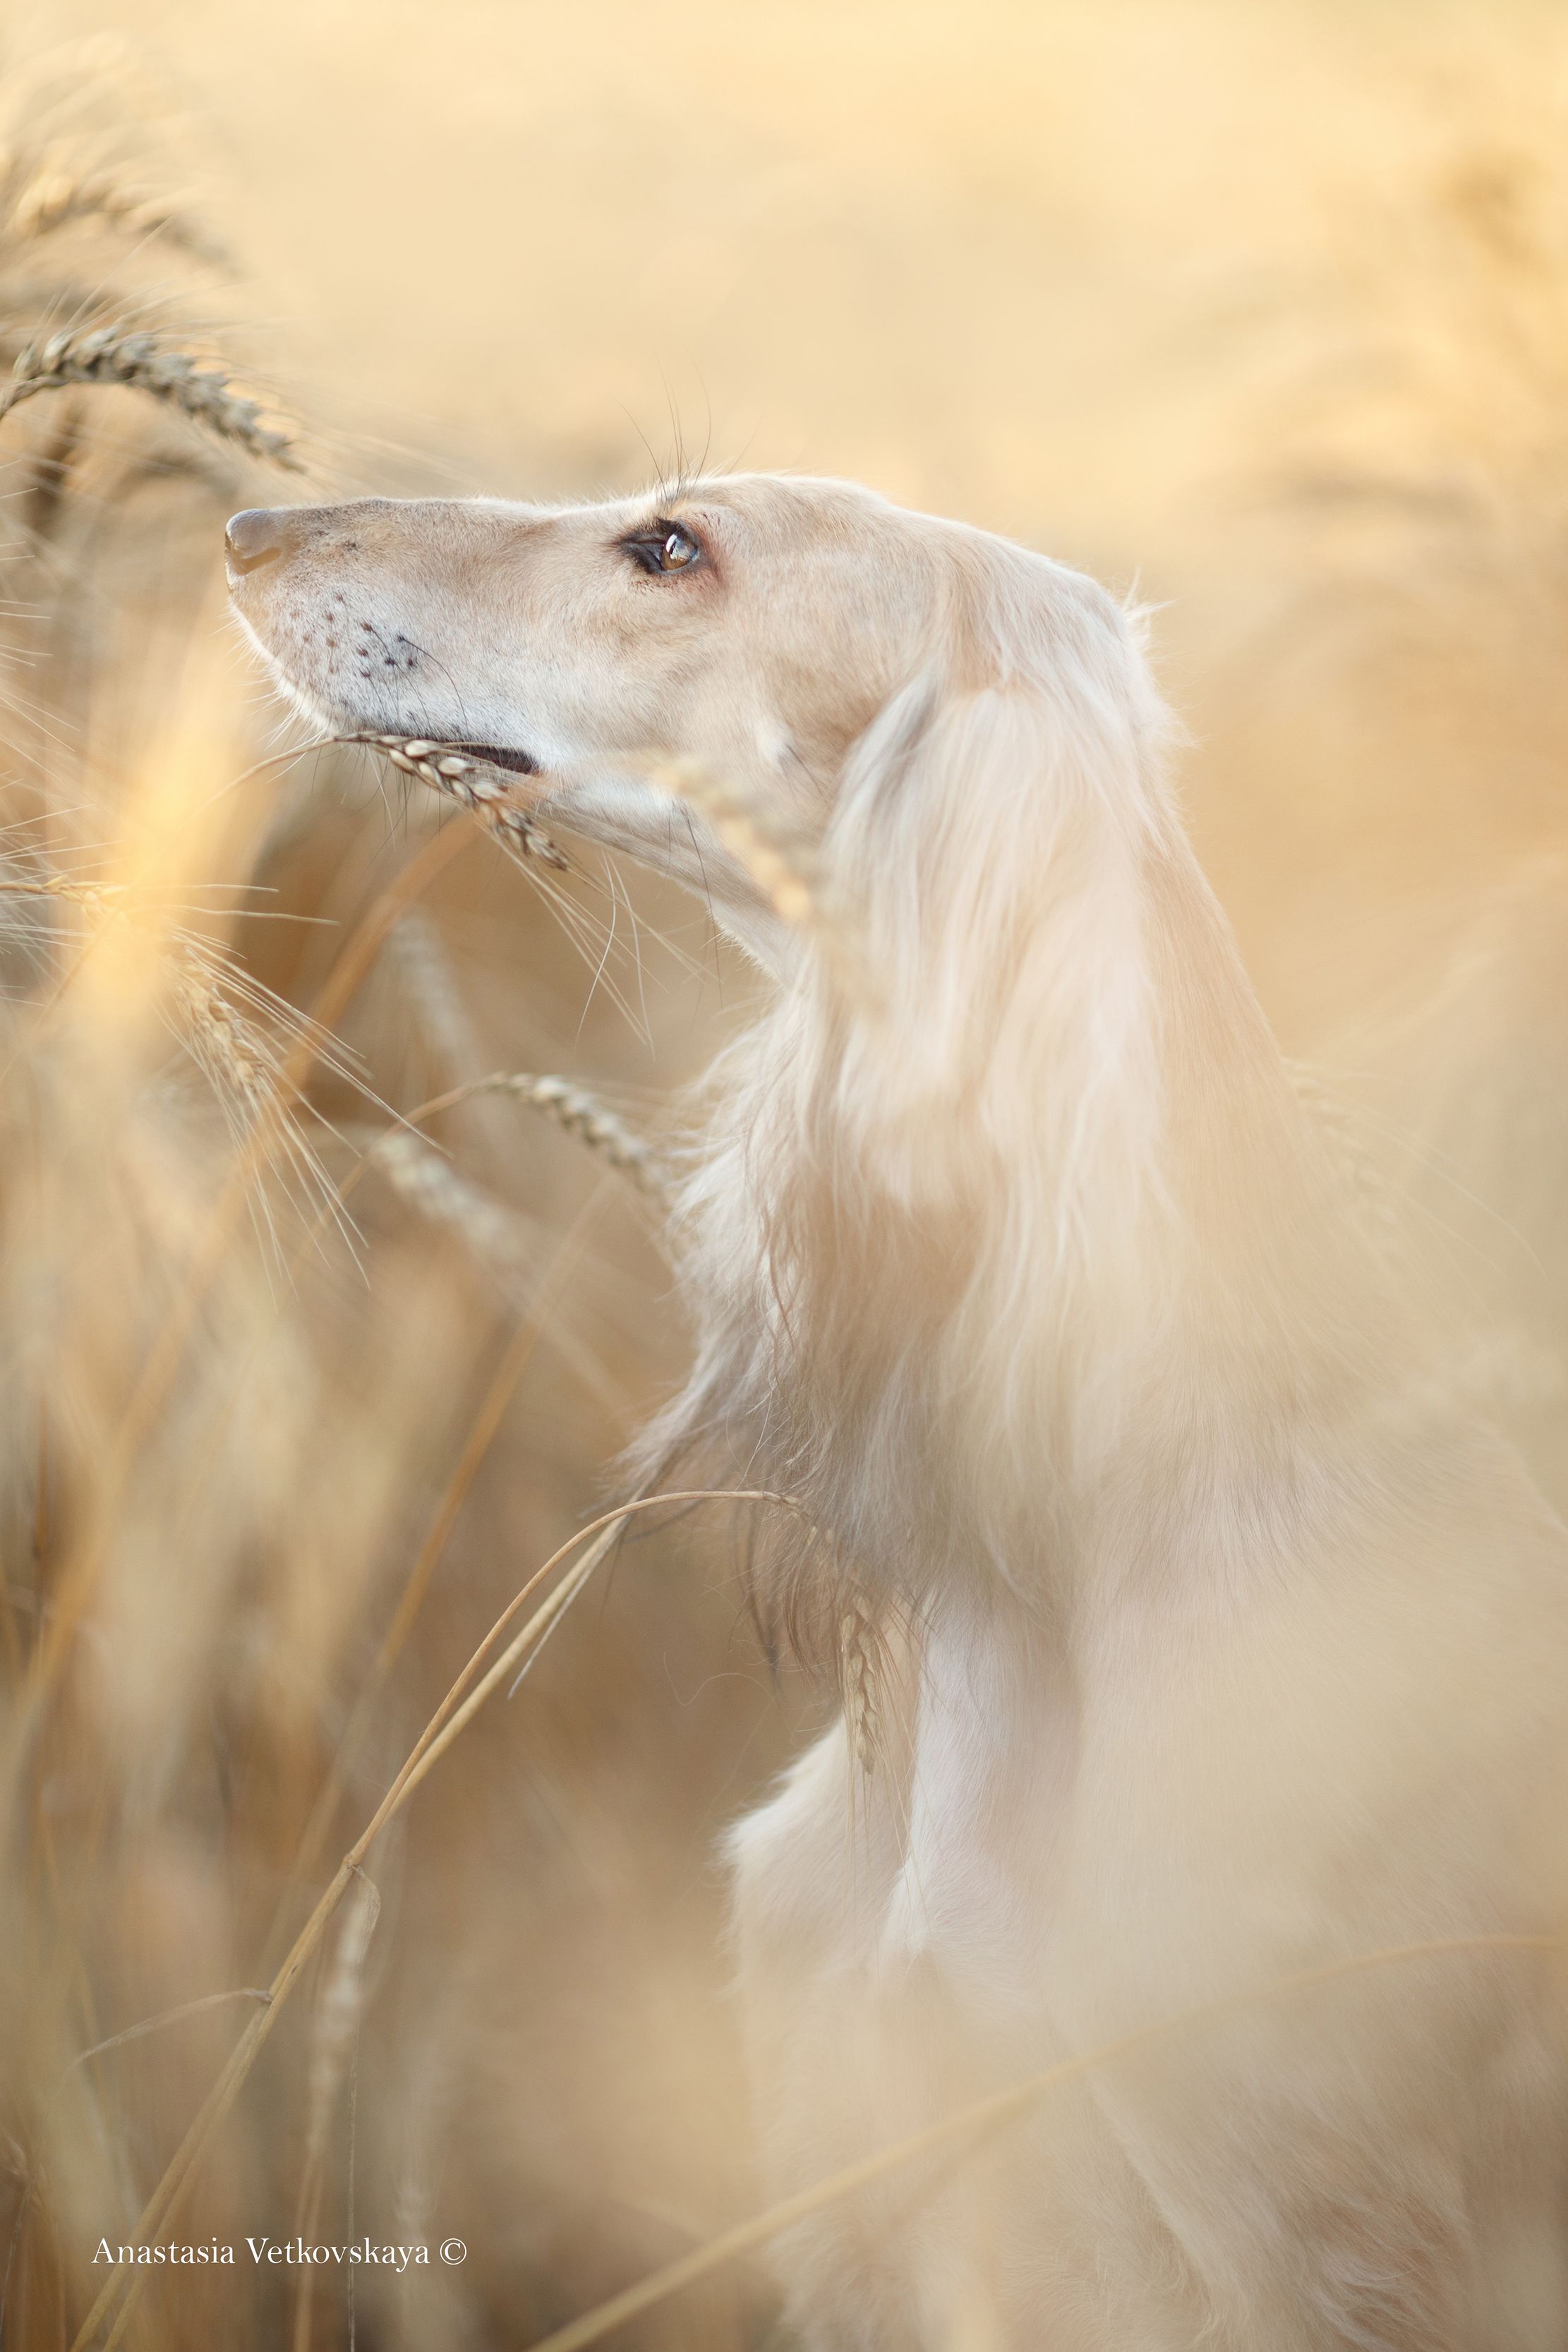 癒される 愛犬写真コンテストの受賞作27点を総覧